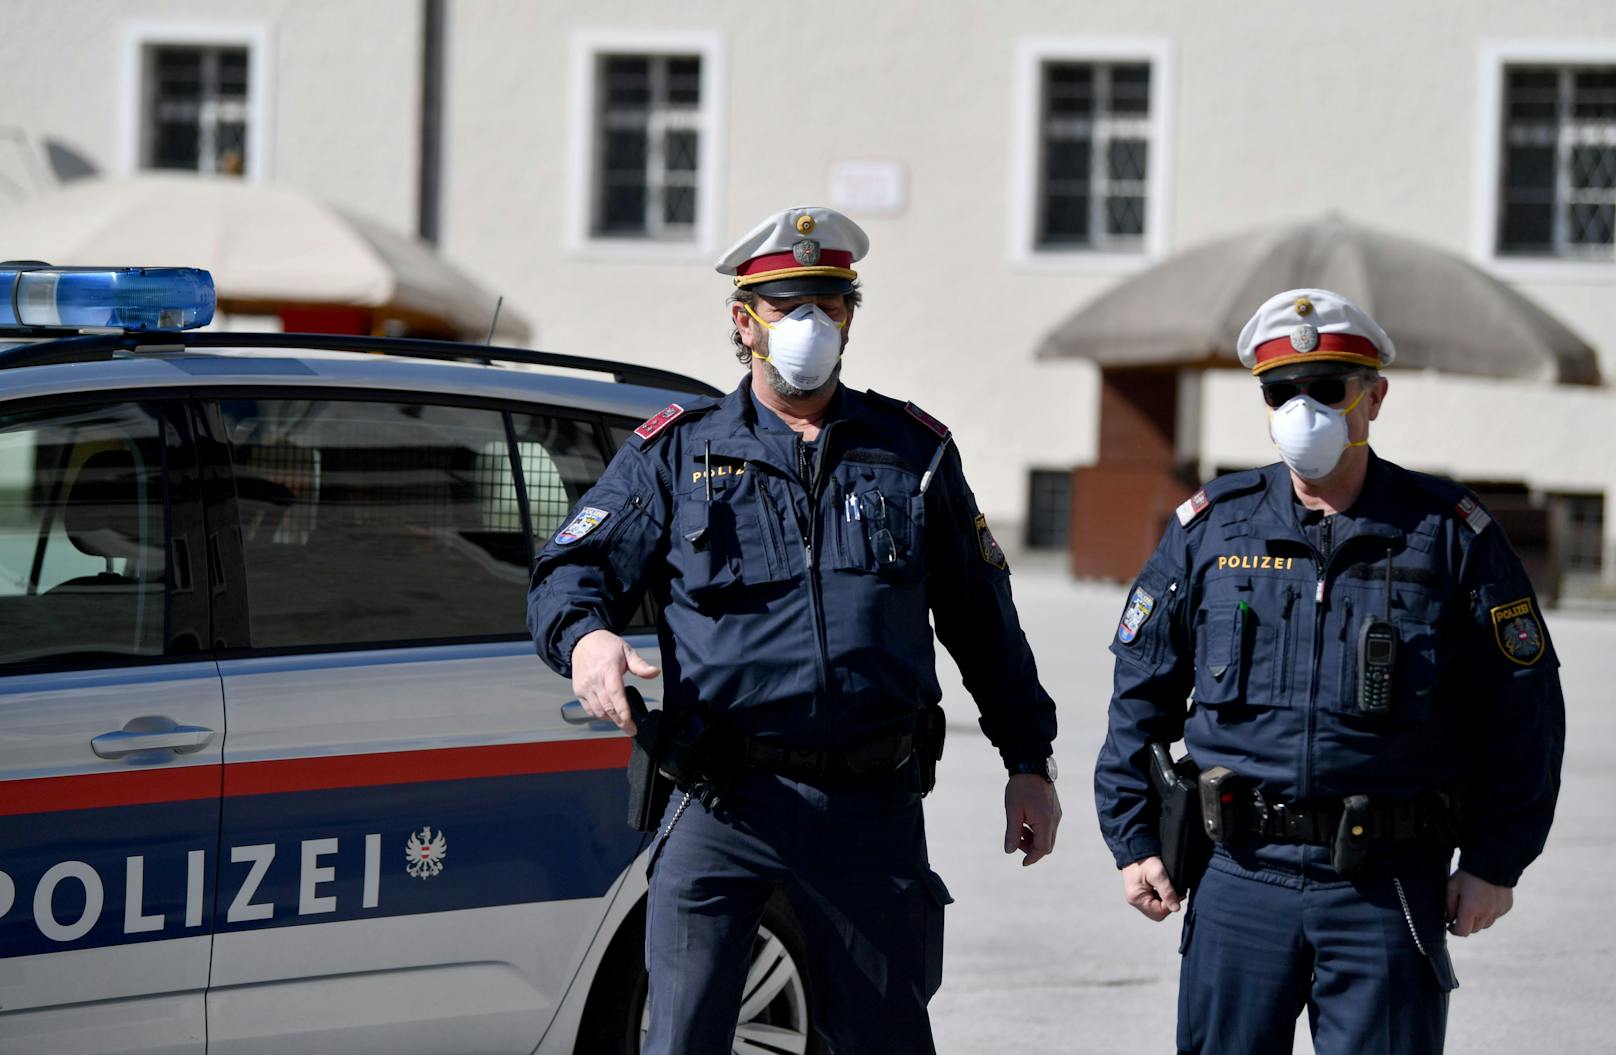 Polizisten mit Mund- und Nasenschutz auf Streife.